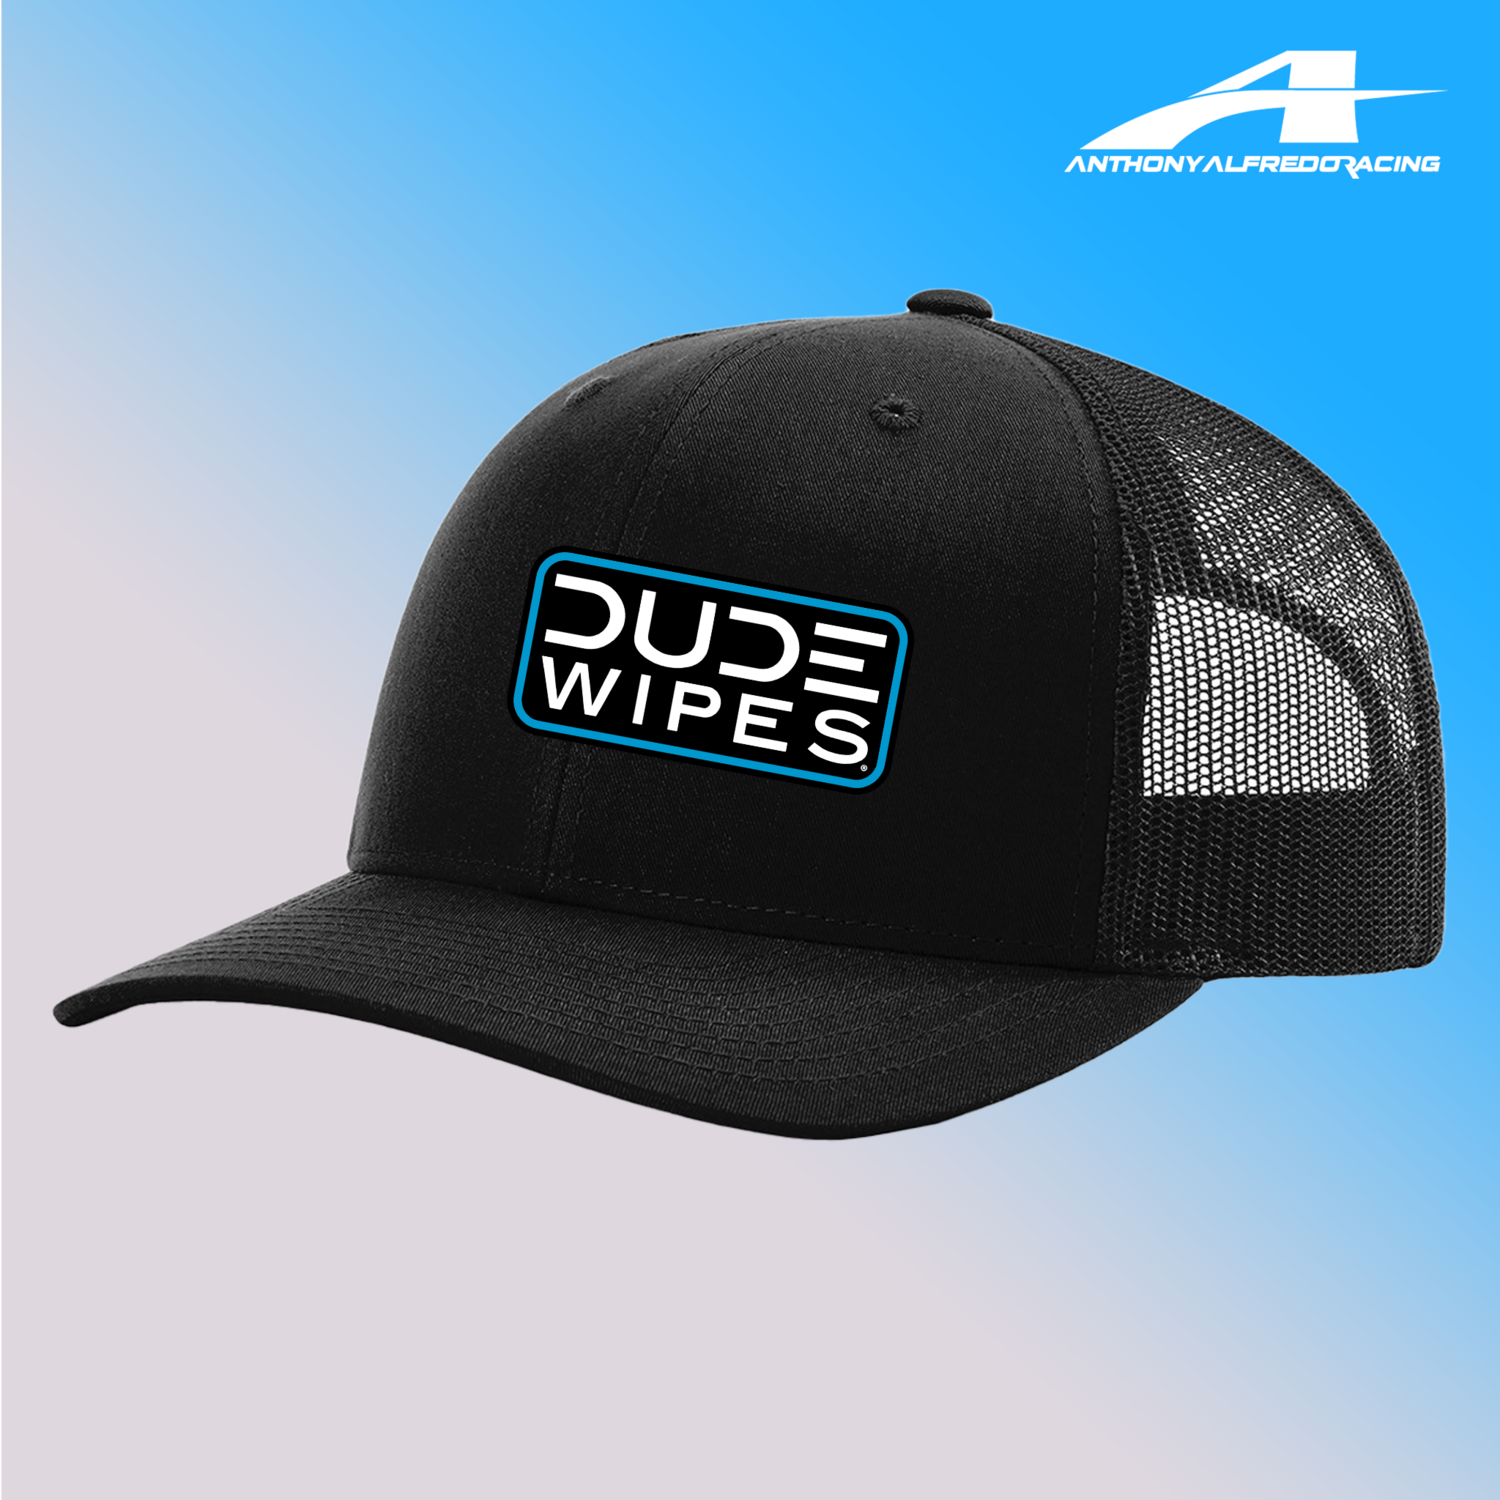 Anthony Alfredo Dude Wipes Adjustable Hat